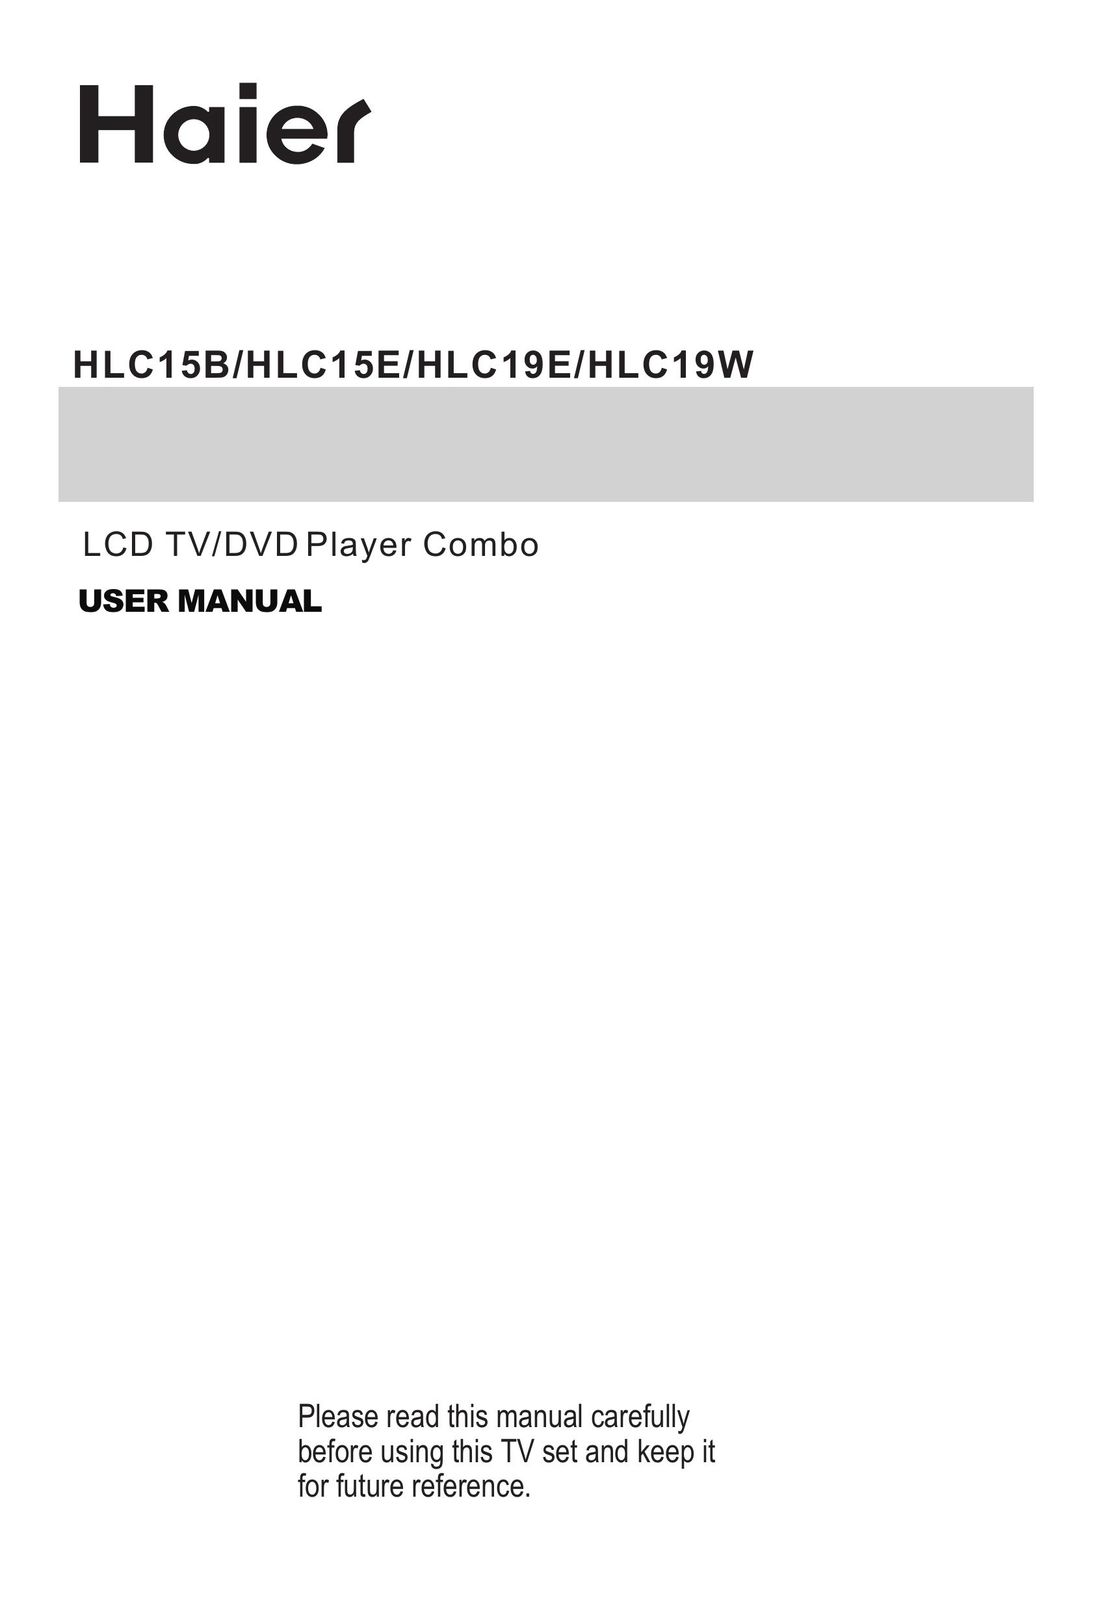 Haier HLC19E TV DVD Combo User Manual